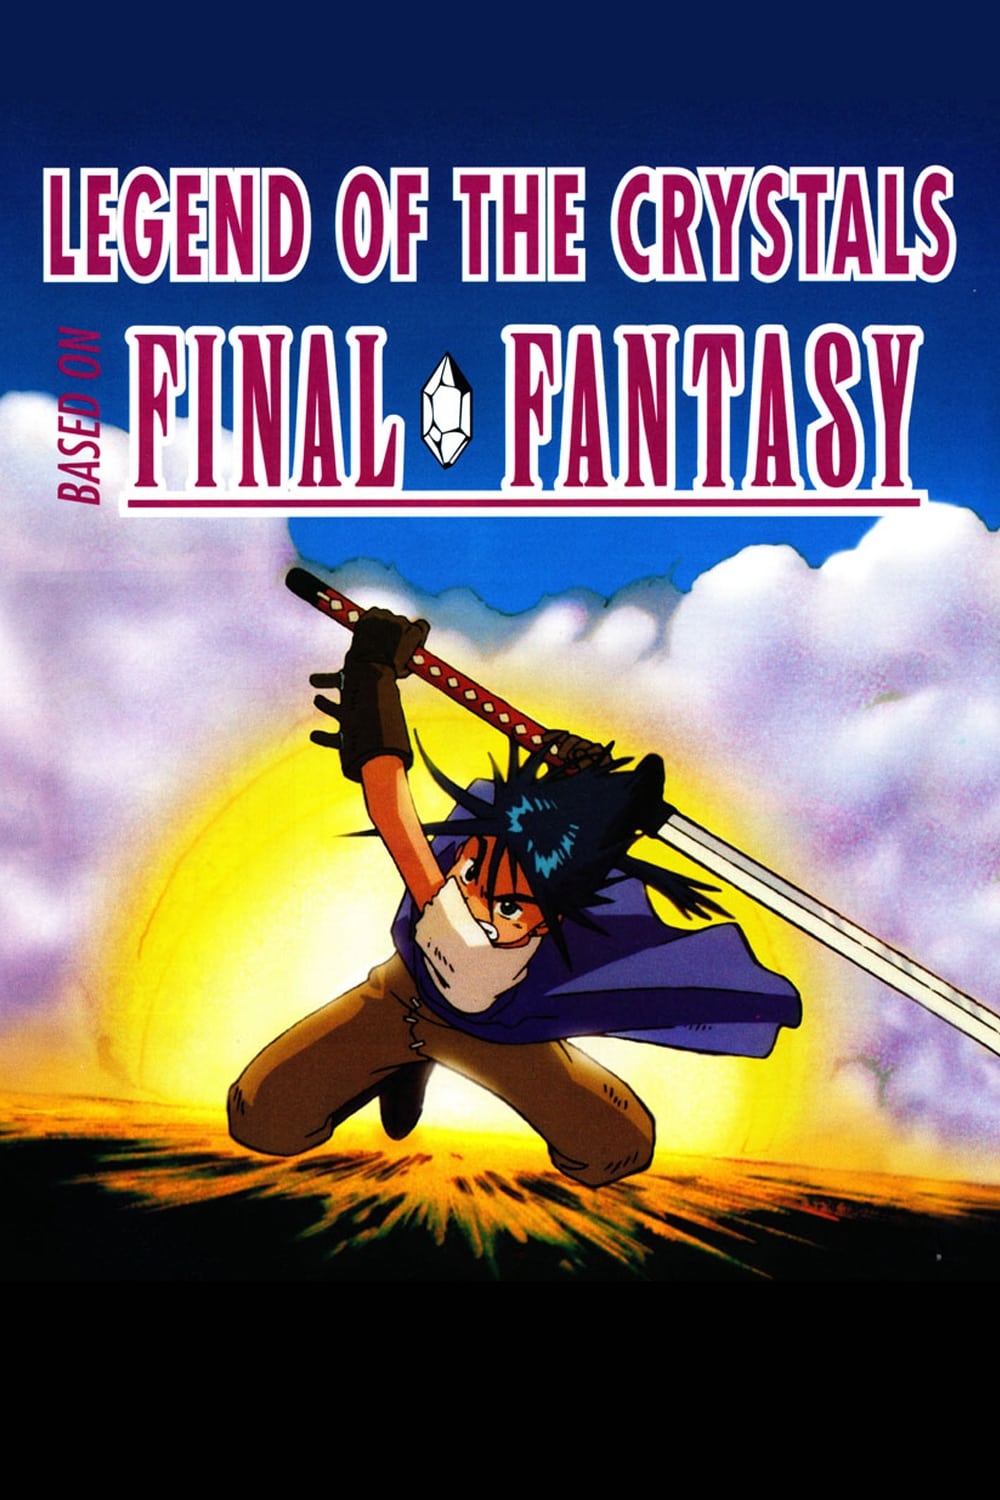 Final Fantasy: La leyenda de los cristales (1994)